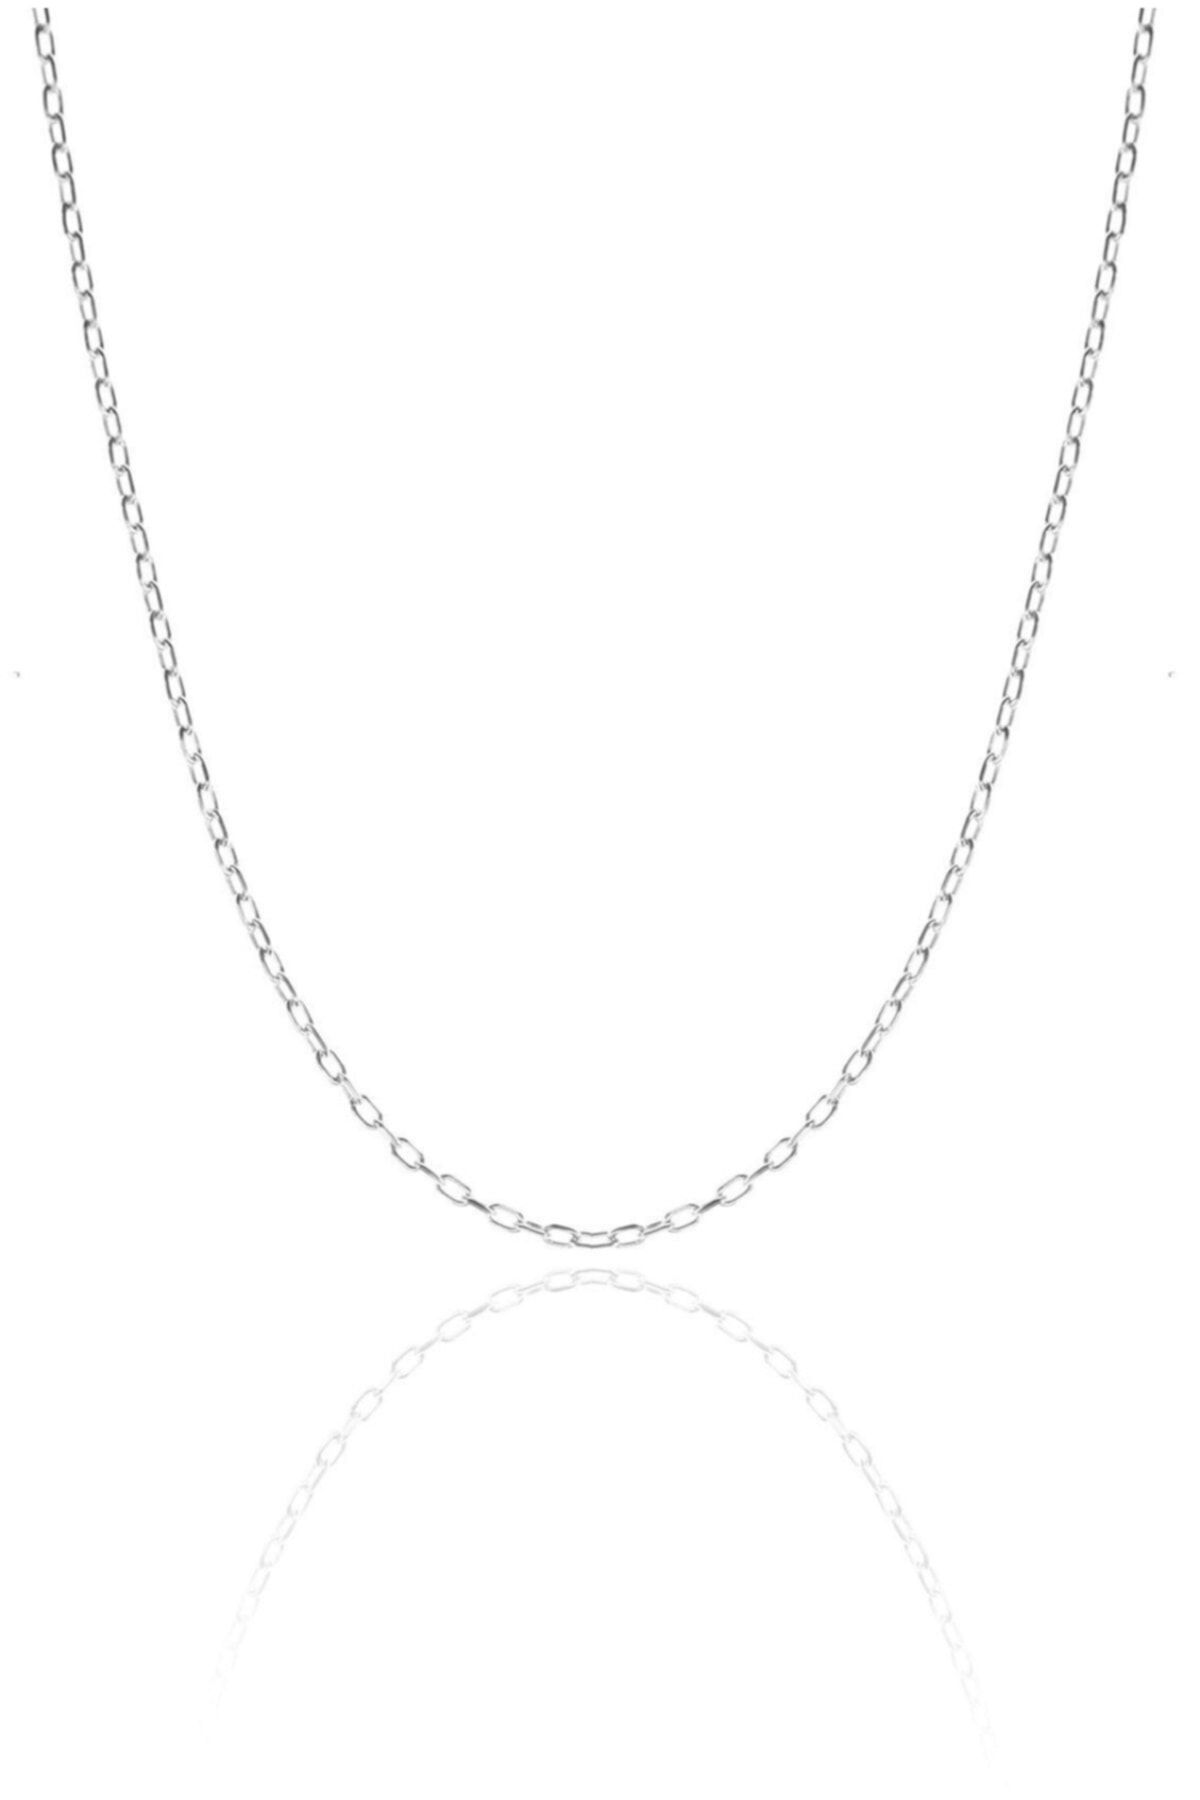 Doğan Silver Kadın Gümüş Rodyumlu Forse Modeli 55 Cm Zincir Dgn20491